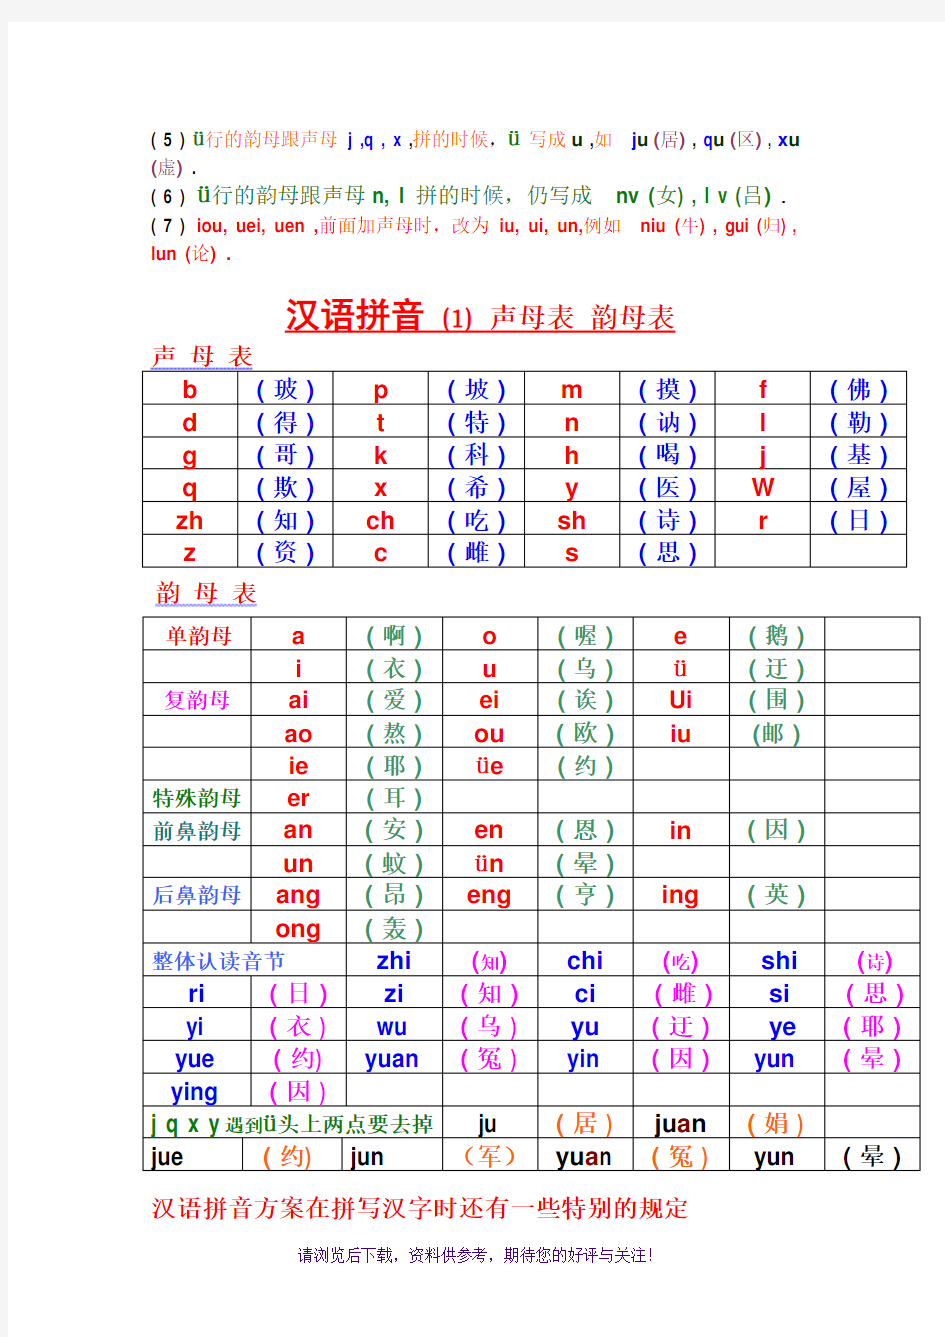 汉语拼音-声母-韵母全表